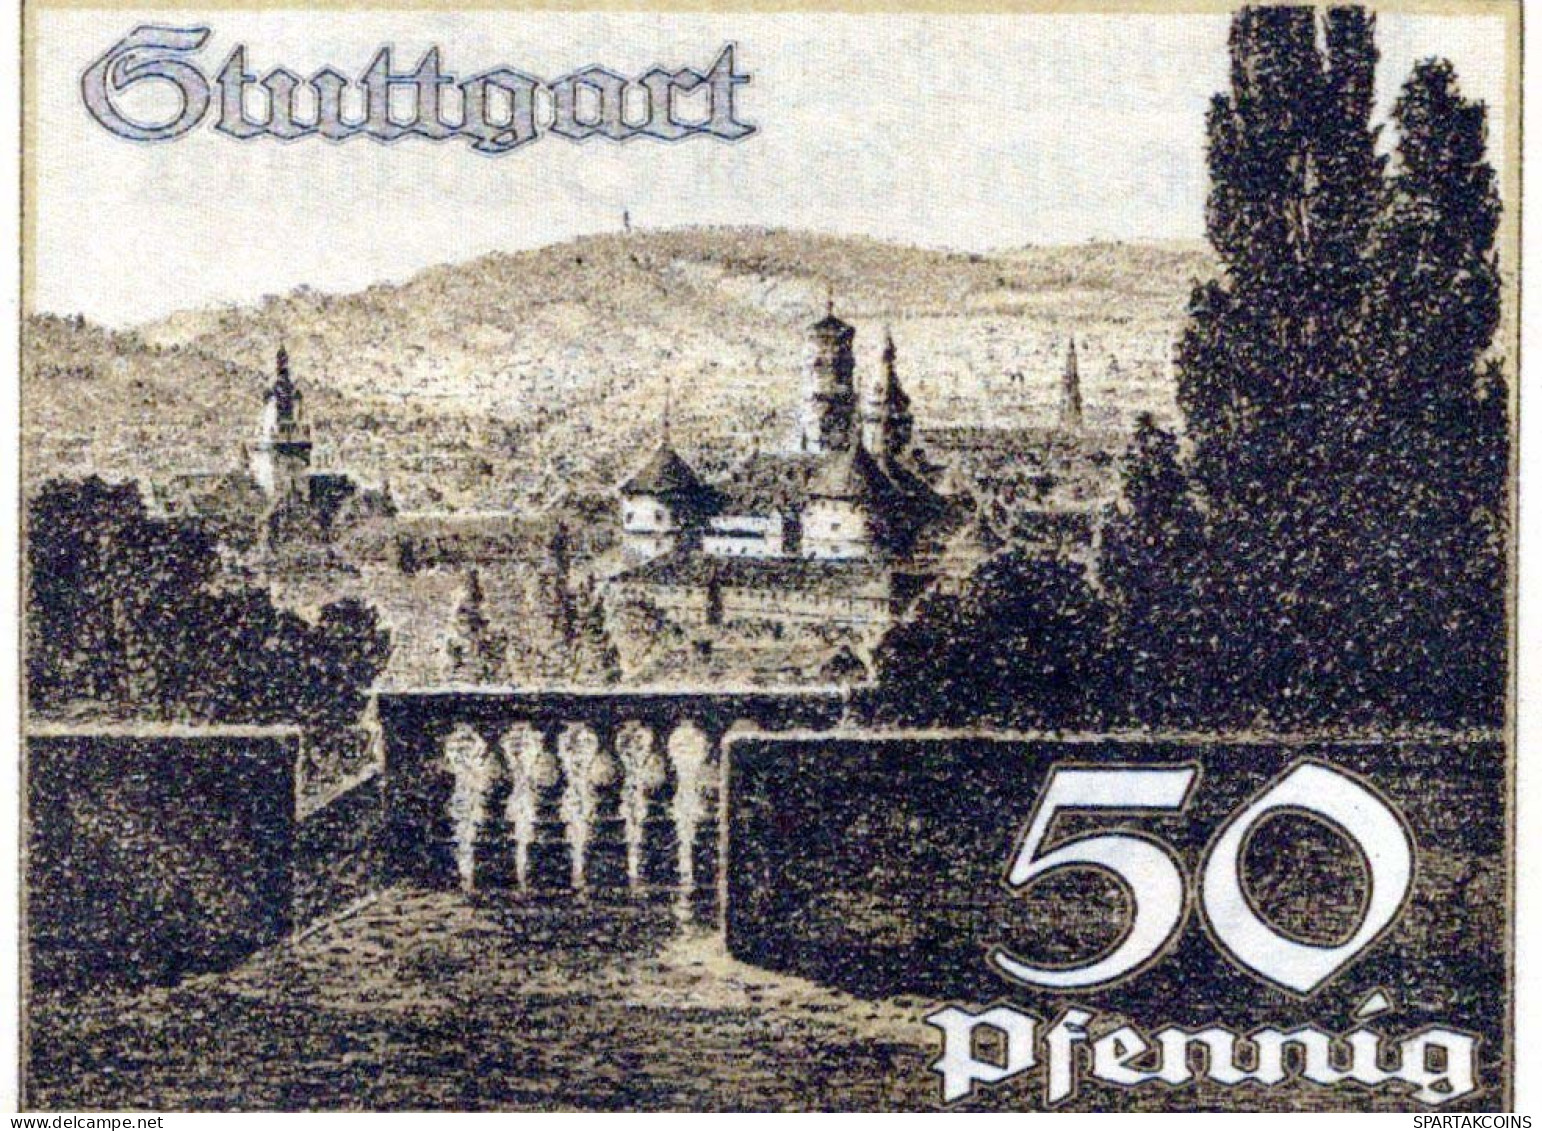 50 PFENNIG 1921 Stadt STUTTGART Württemberg UNC DEUTSCHLAND Notgeld #PC437 - [11] Emissions Locales